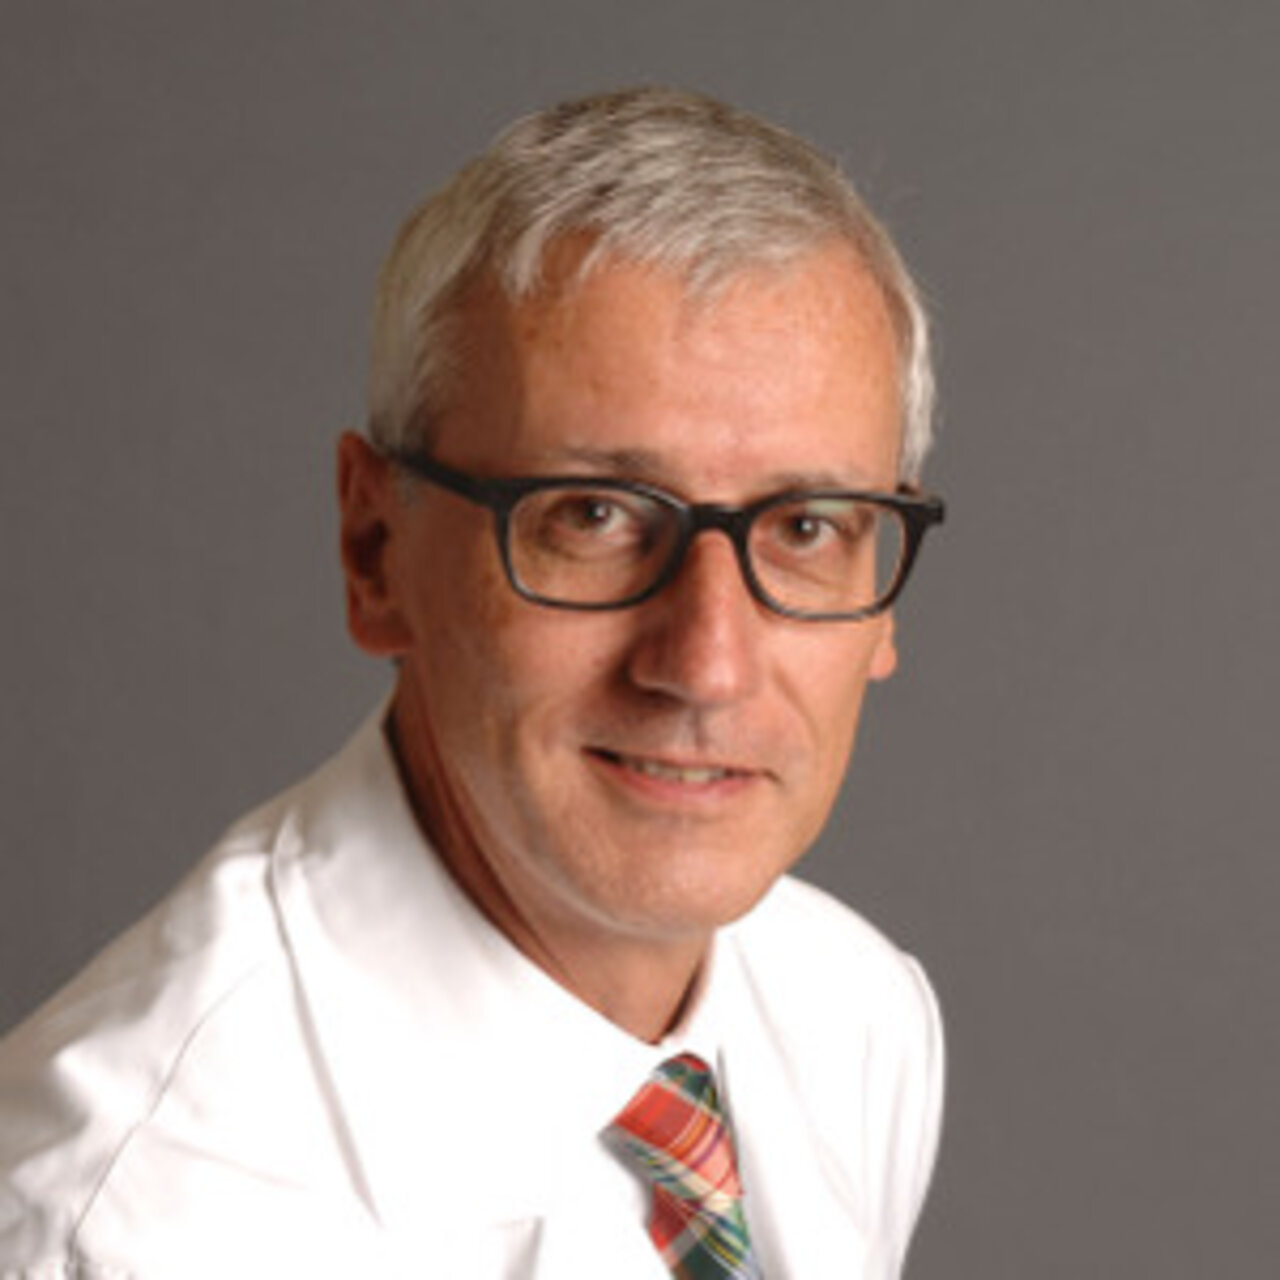 Prof. Dr. méd. Schlumpf  - Portrait